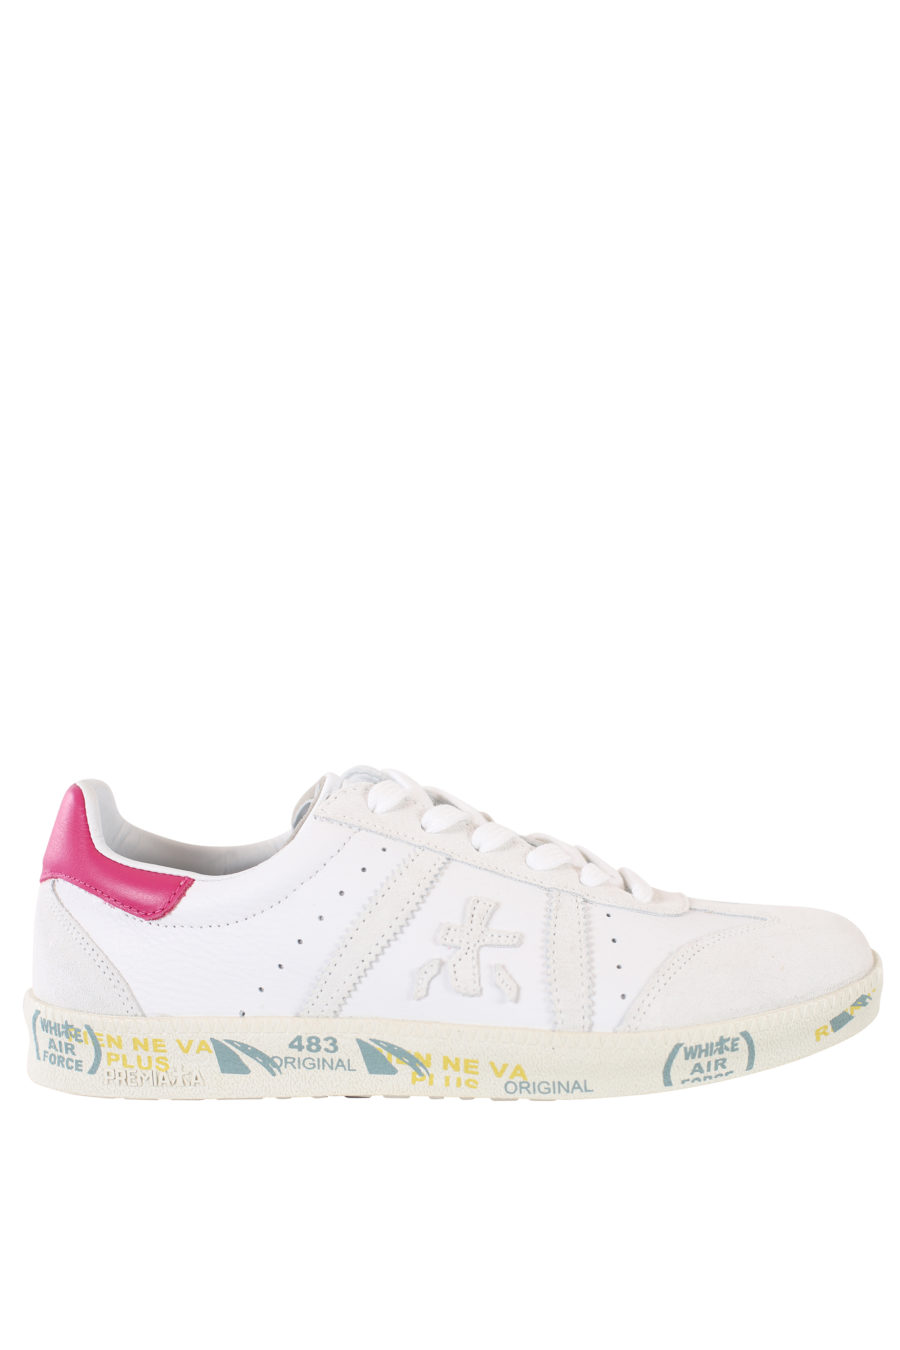 Zapatillas blancas con detalle rosa "Bonnied" - IMG 2183